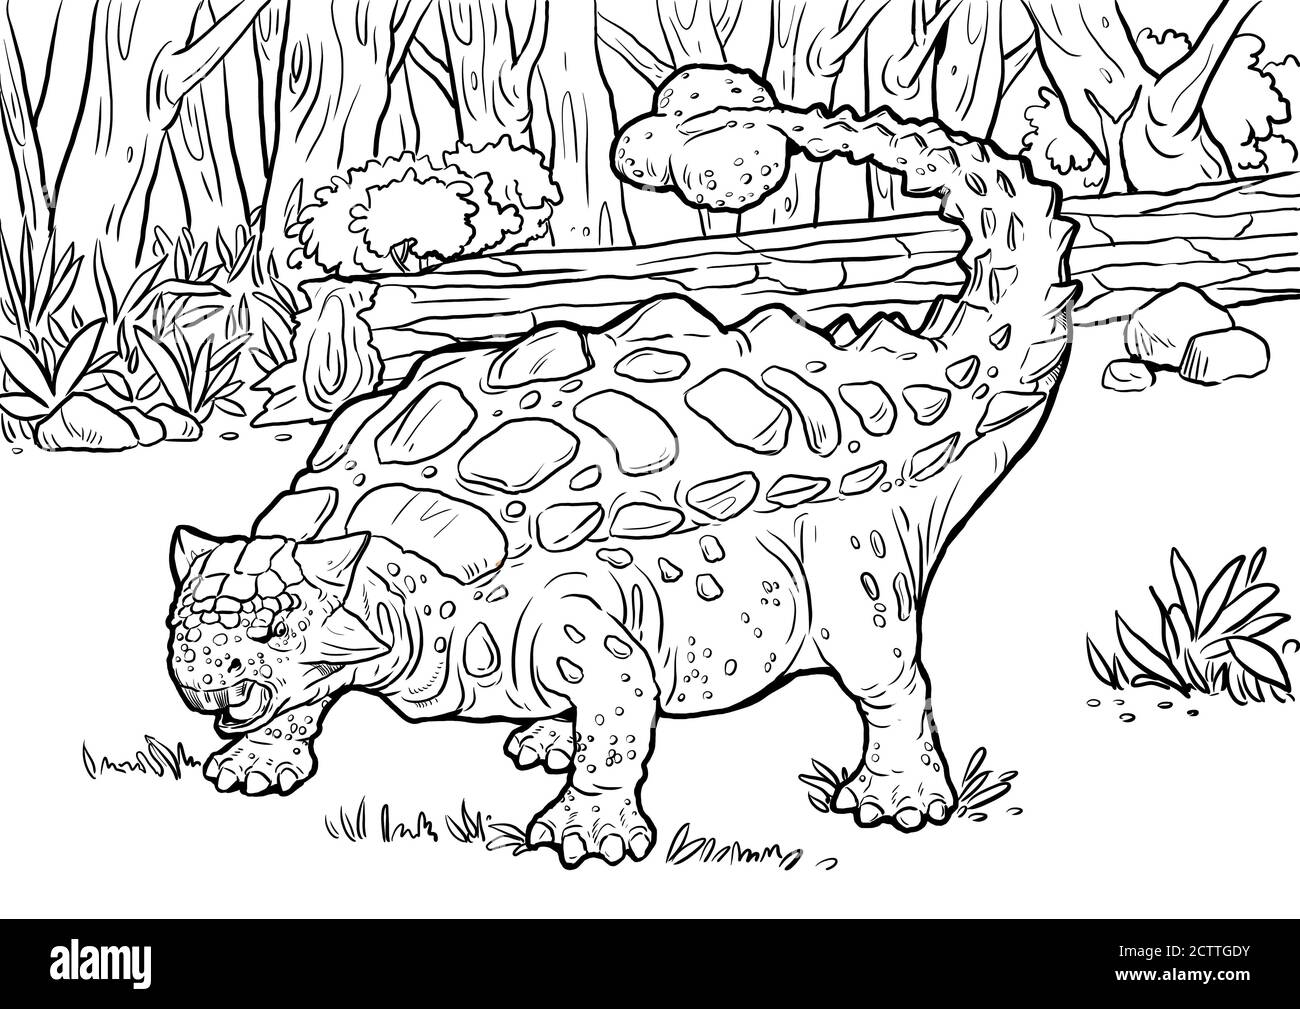 Dinosauro erbivoro - Ankylosaurus. Cartone animato Dino. Modello di libro da colorare. Foto Stock